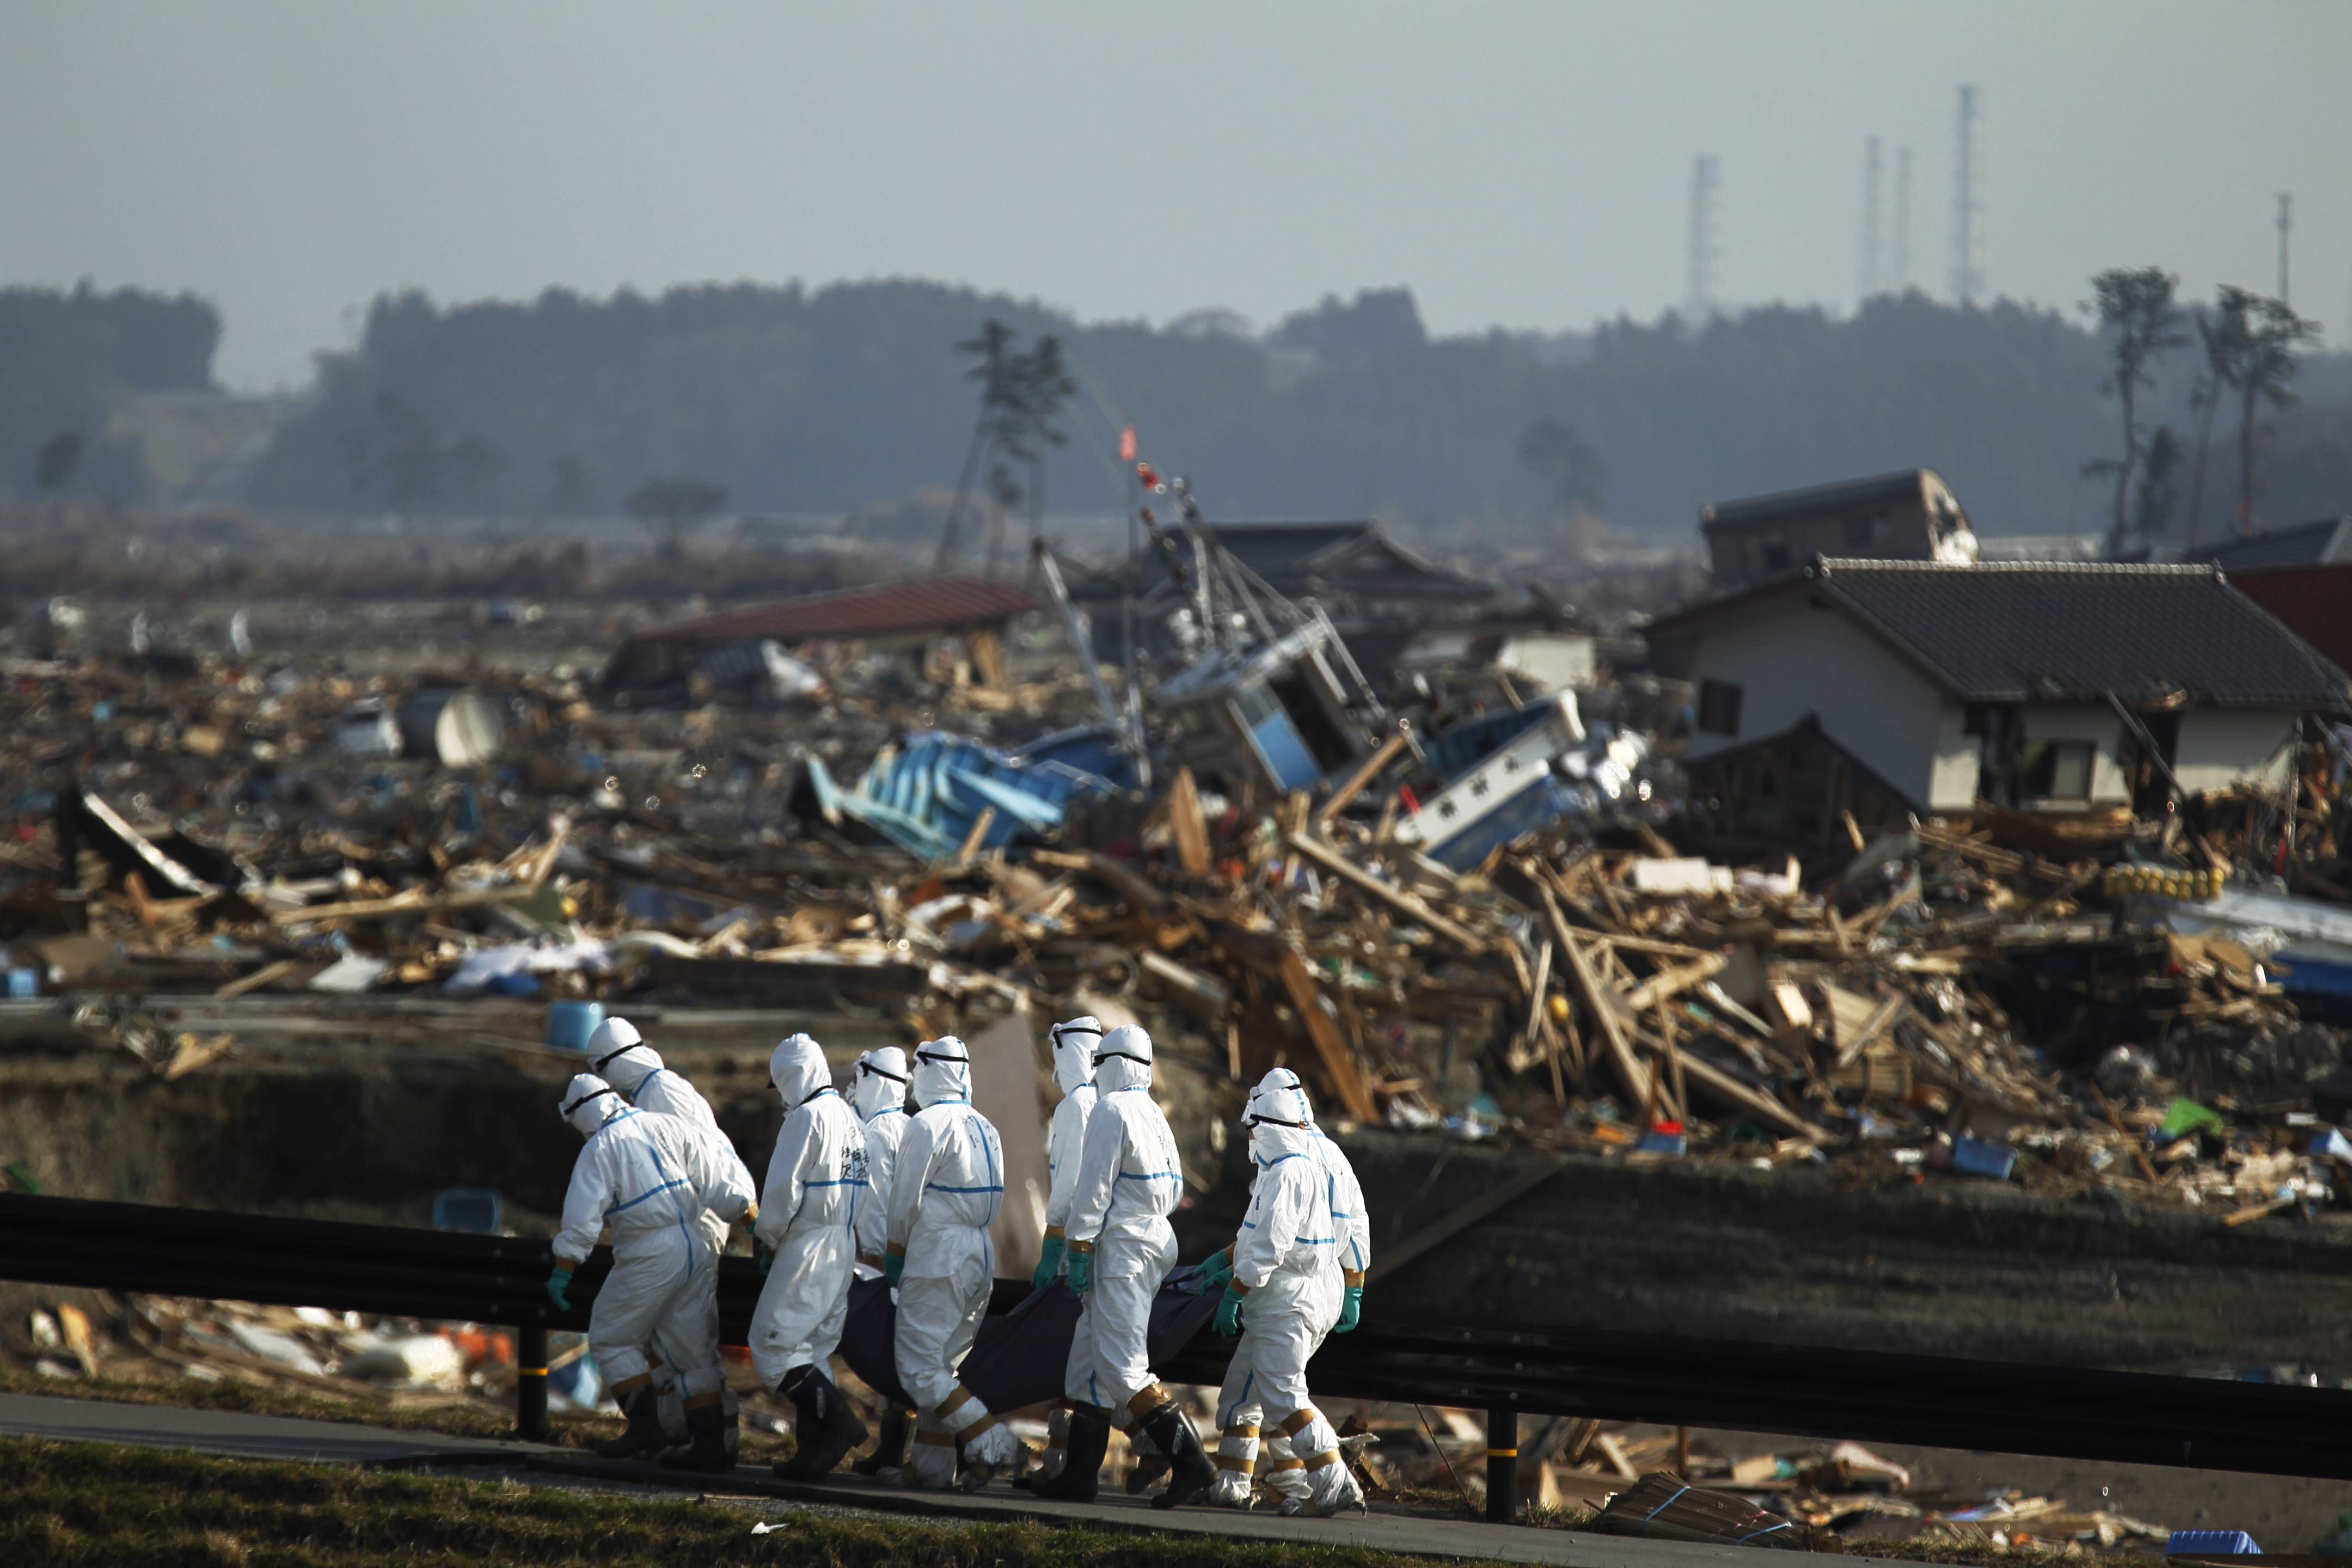 Авария на АЭС Фукусима-1. Авария на АЭС Фукусима-1 (Япония).. ЦУНАМИ В Японии 2011 Фукусима. Авария на АЭС Фукусима-1 (Япония, 2011).. Авария на аэс в японии